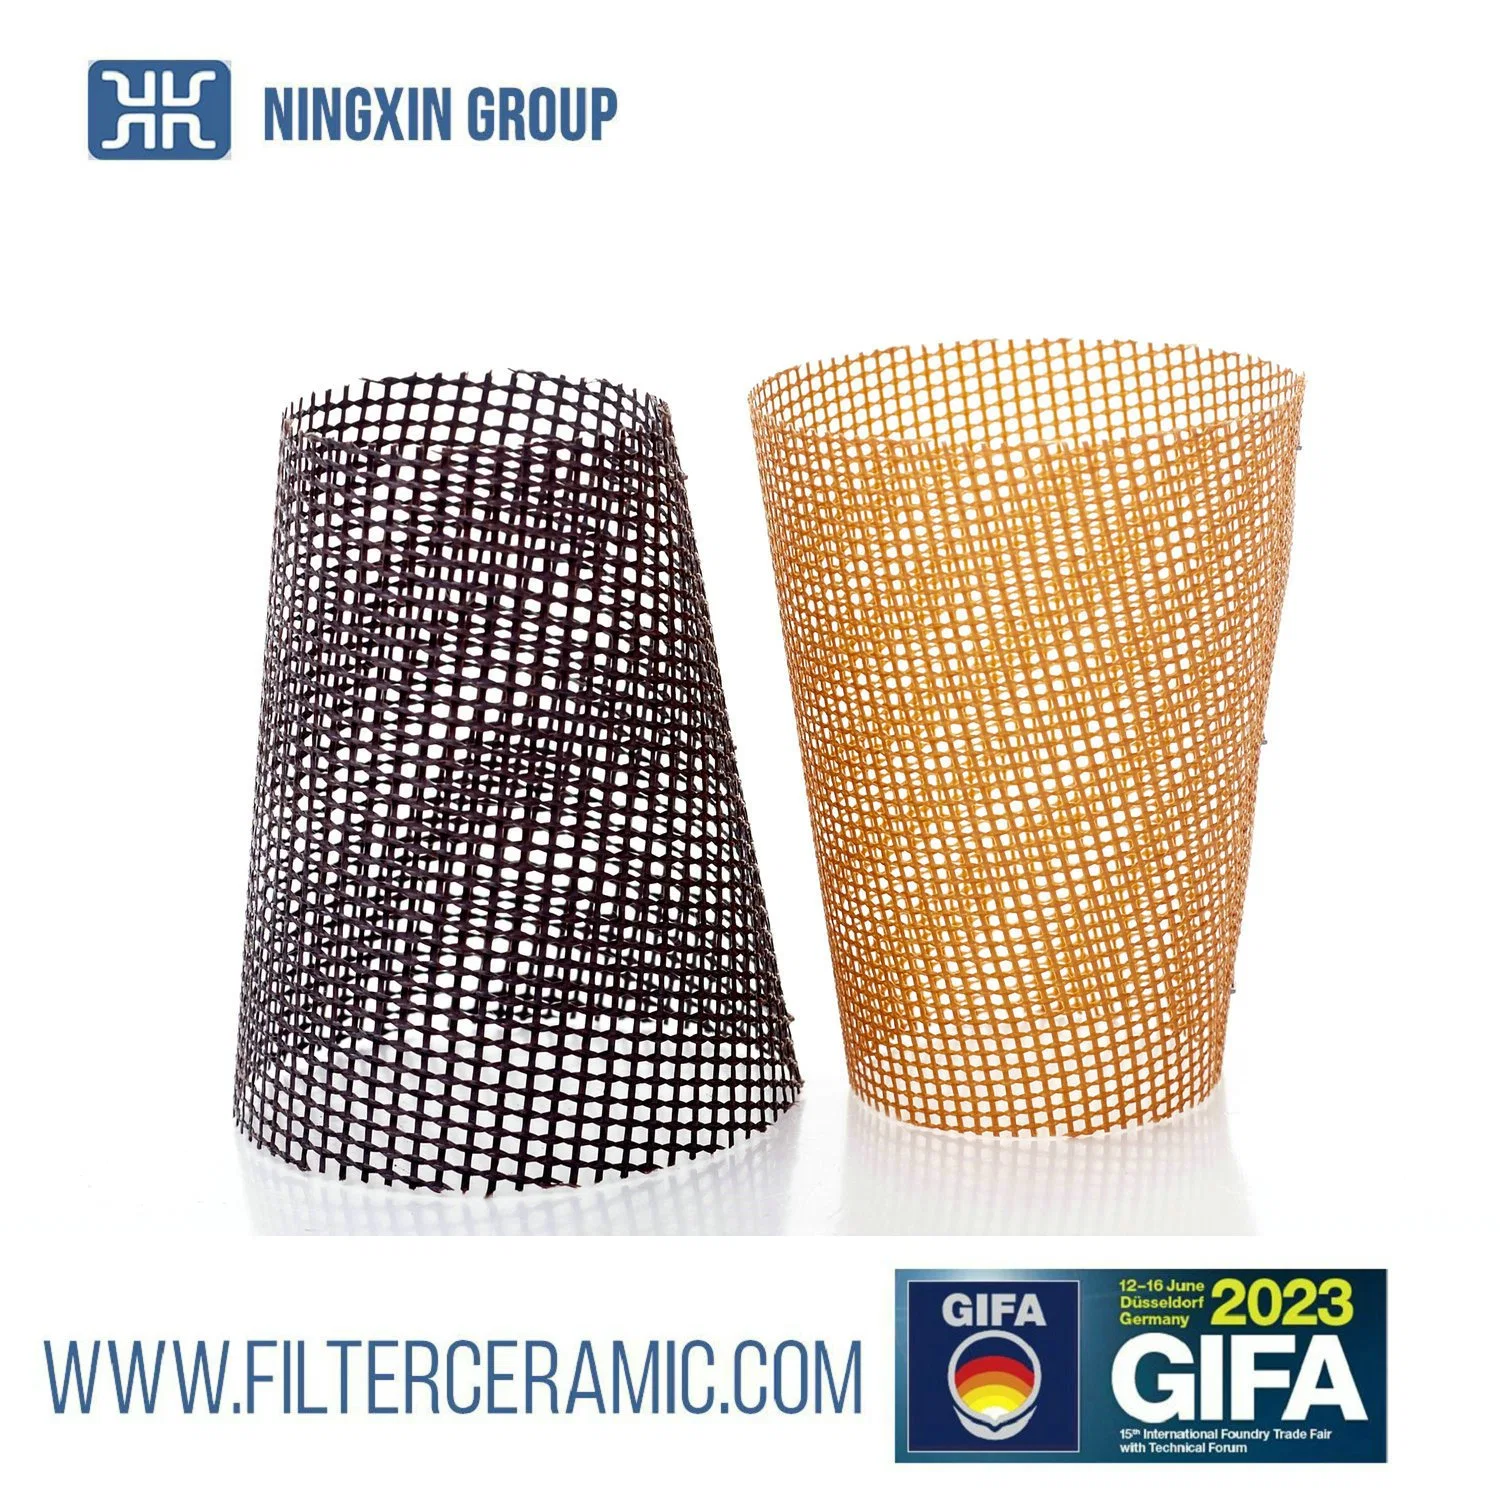 Glasfasern Filternetz und Fiberglas Kone Filtergitter für geschmolzene Aluminiumfiltration